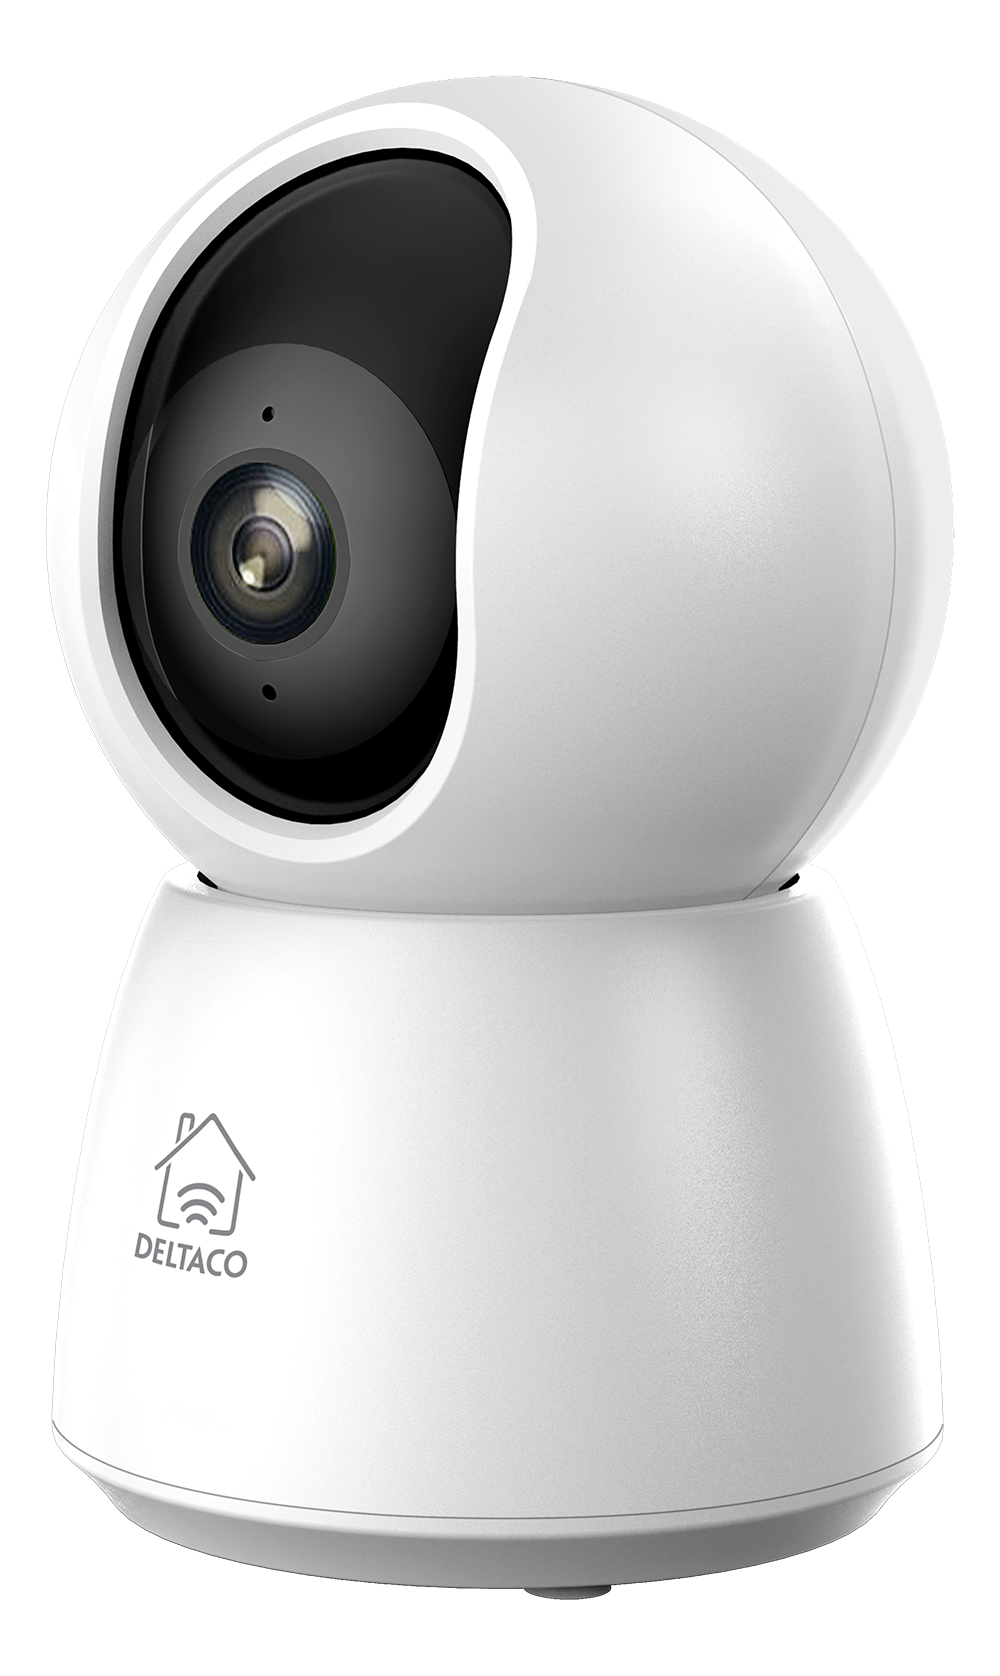 DELTACO SMART HOME WiFi kamera ar motorizētu panoramēšanu un slīpumu, divvirzienu audio,